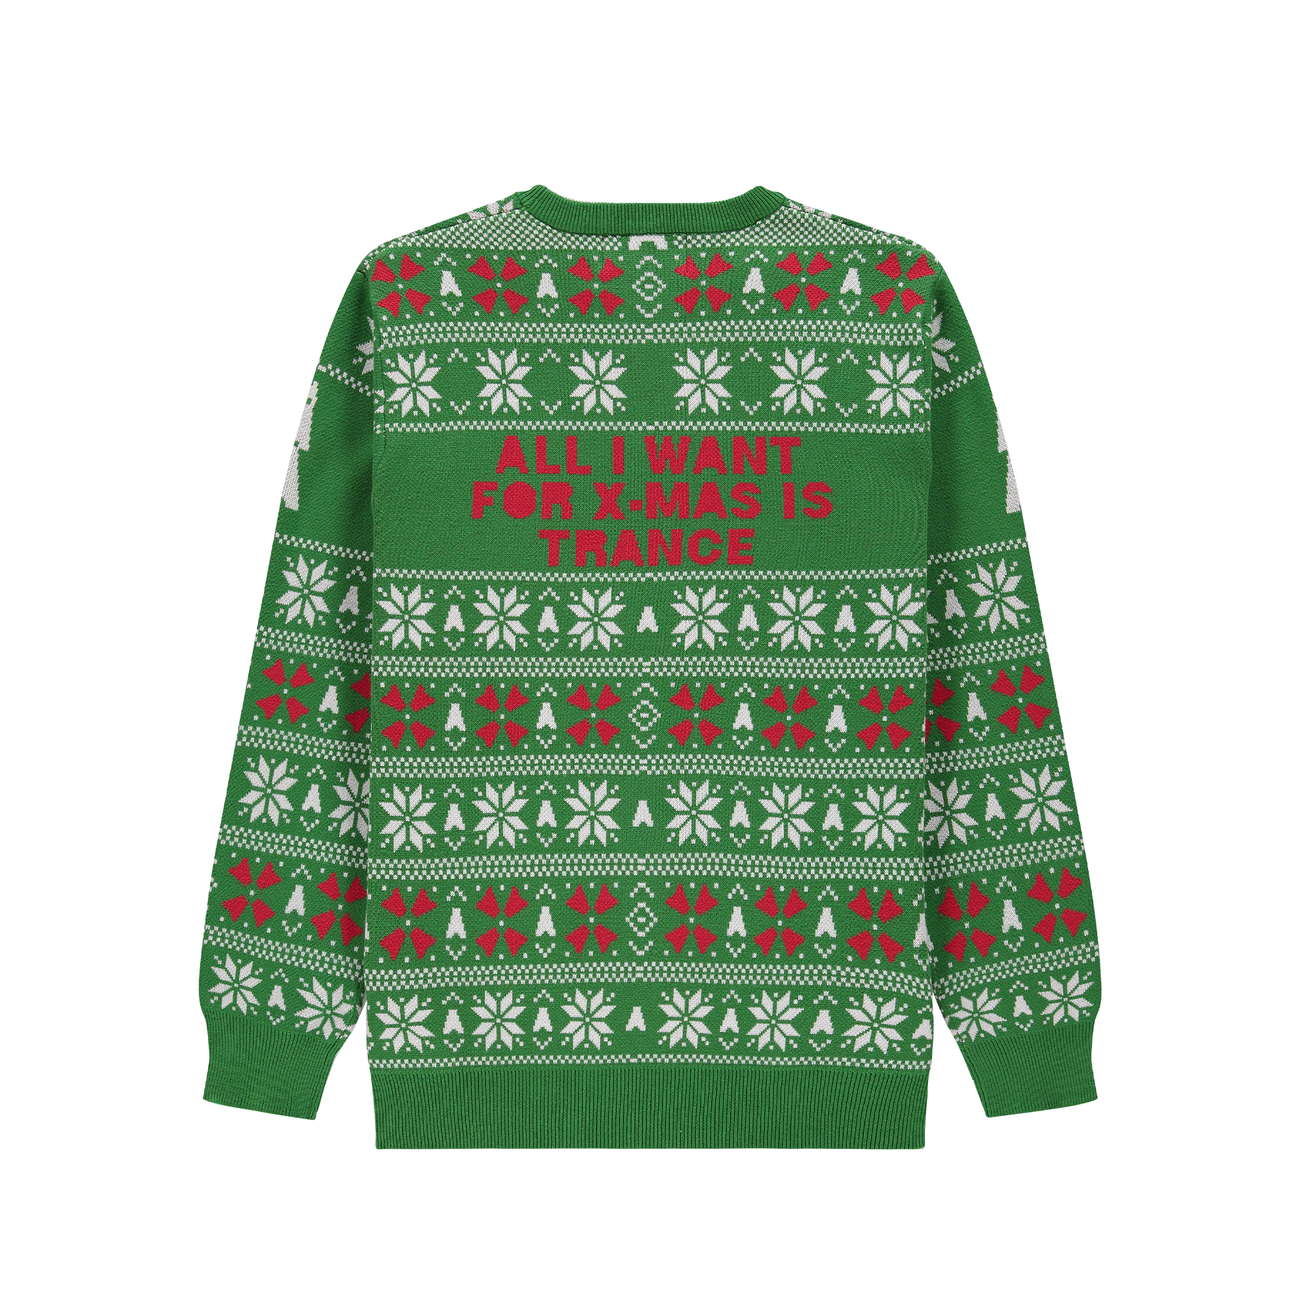 Armin van Buuren Christmas Sweater - Green